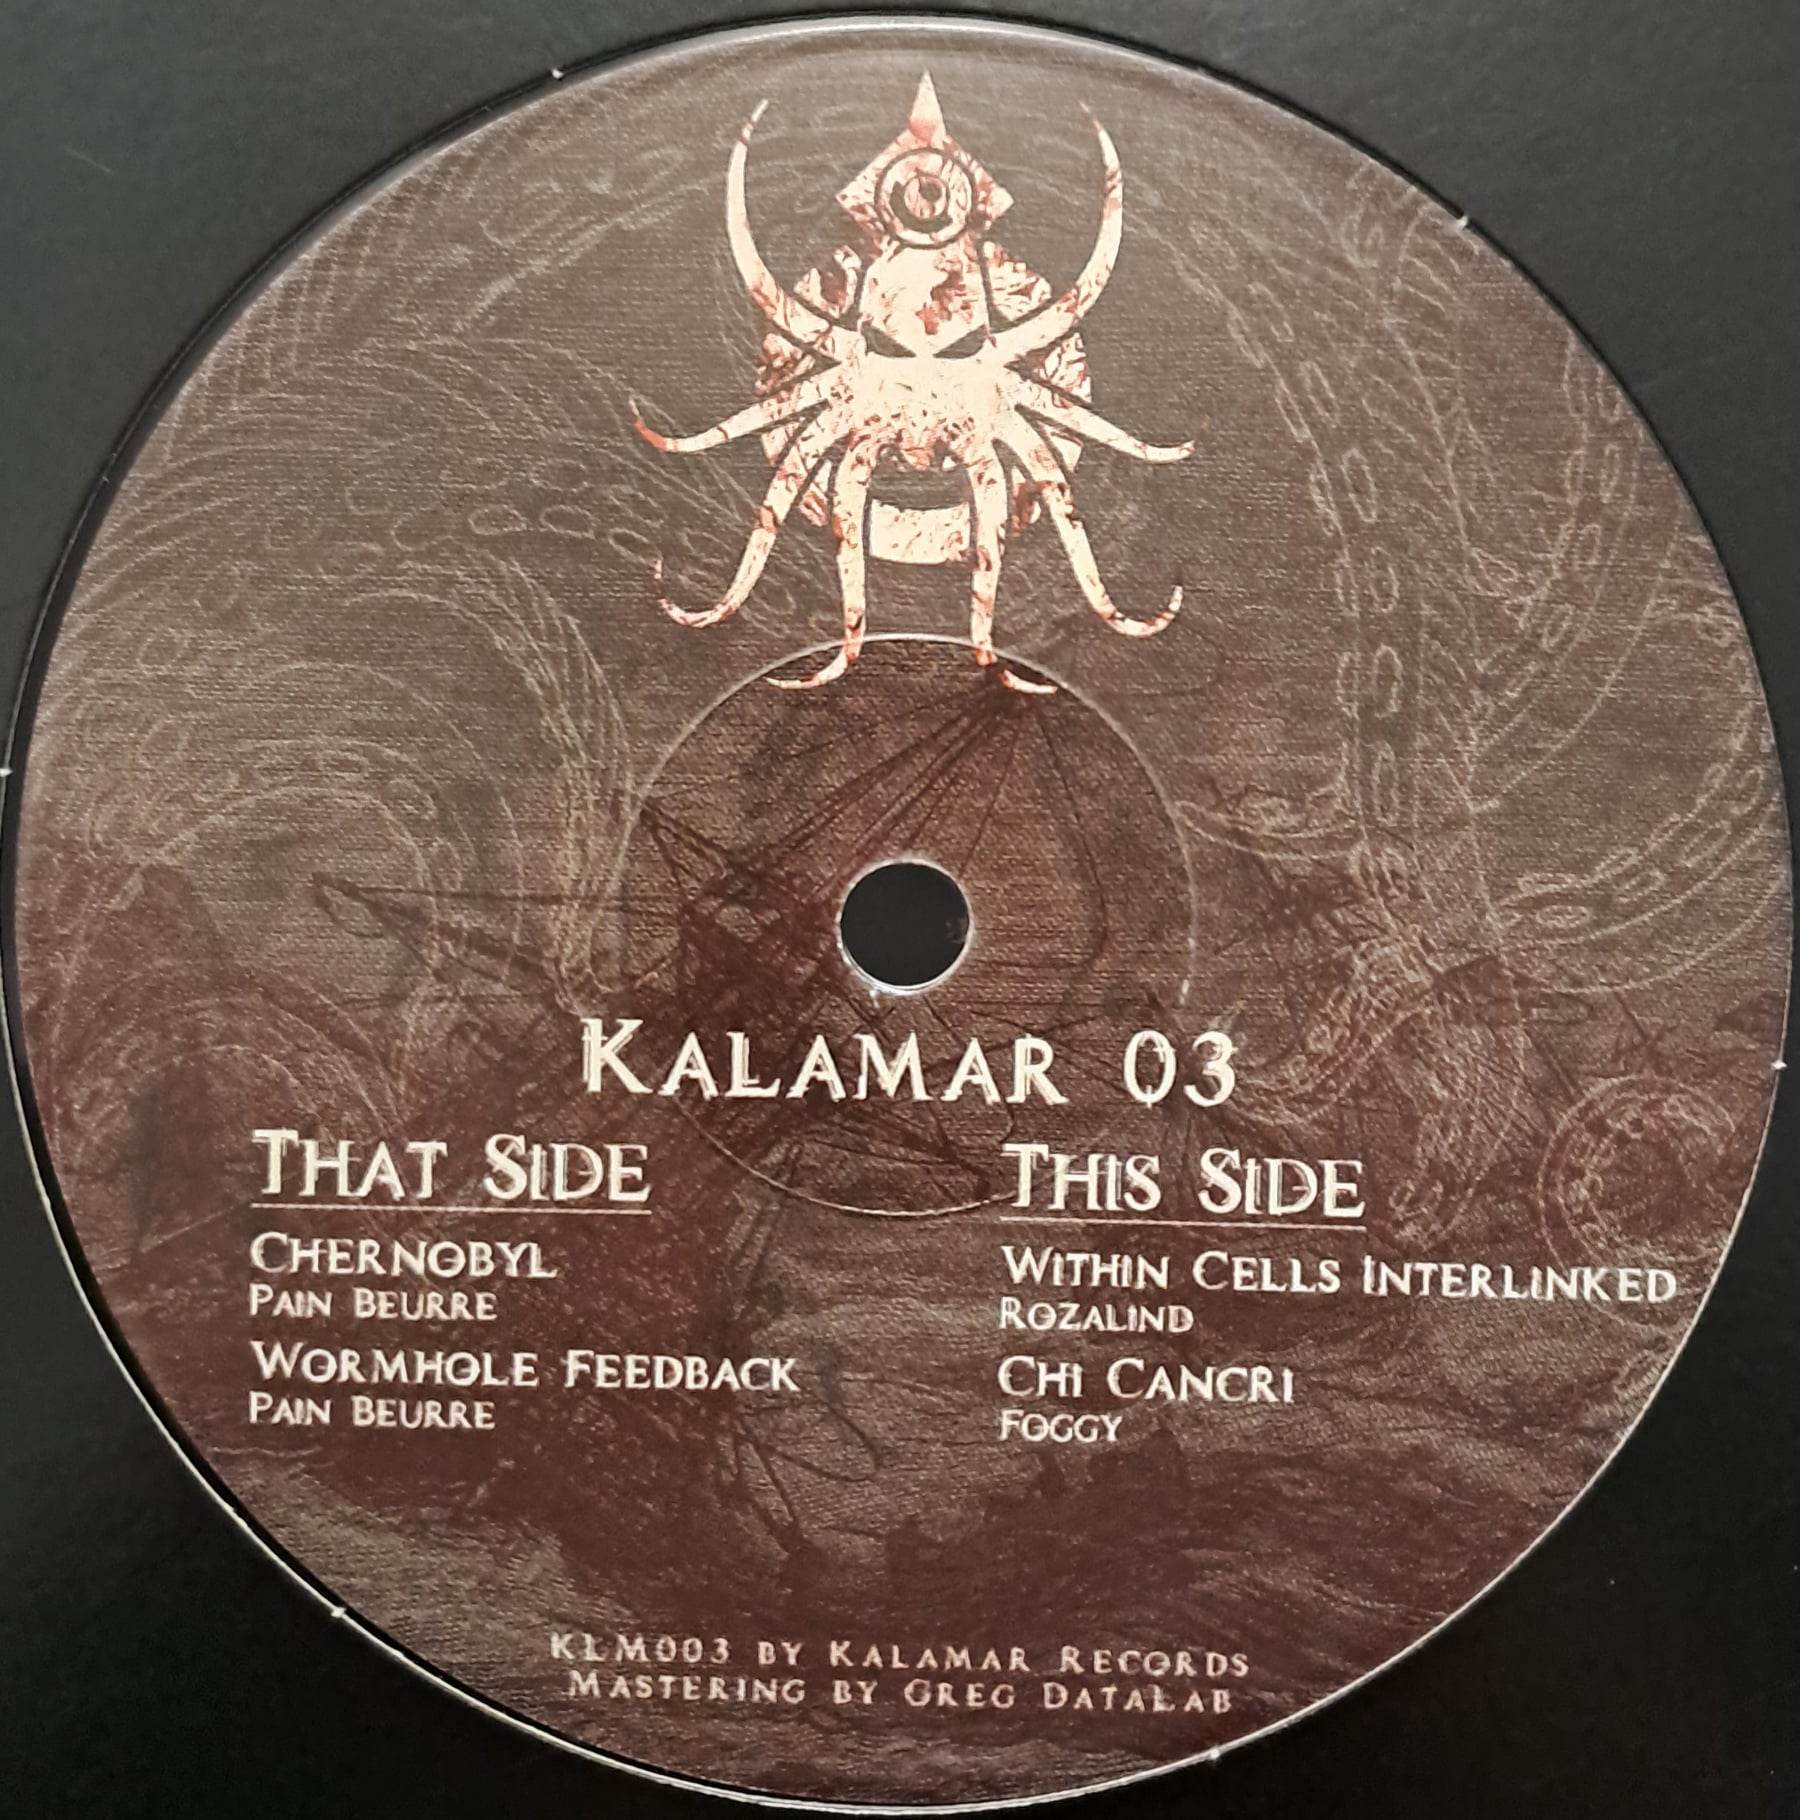 Kalamar 003 (toute dernière copie en stock) - vinyle freetekno